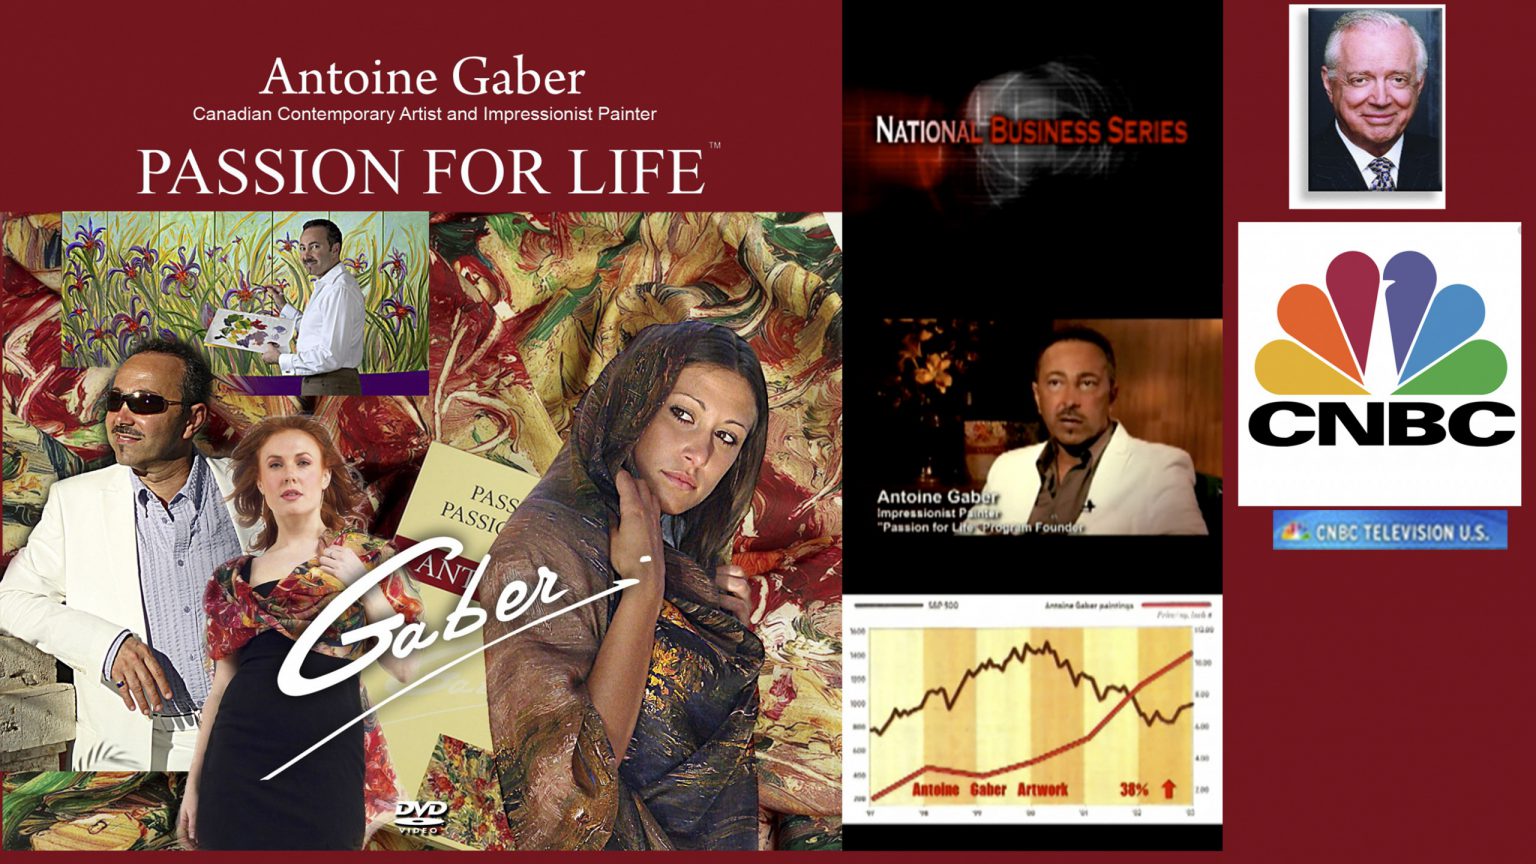 En septiembre 7-2008, en USA se transmitió un fragmento educativo de la biografía de Gaber a través de la red televisiva CNBC, en más de 90 millones de hogares y en más de 300 comercios.